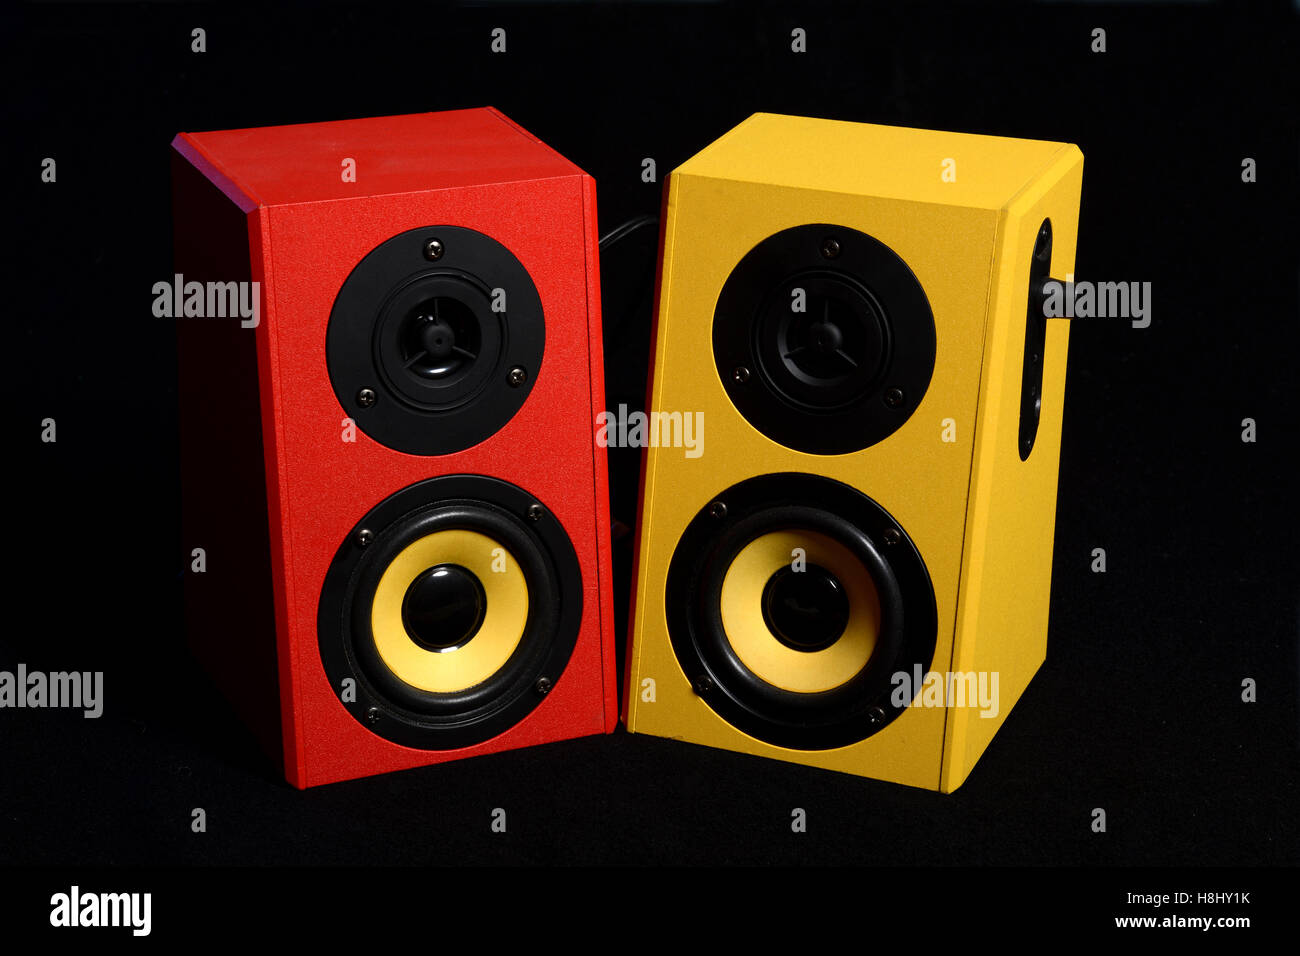 Yed et jaune sur l'Orateur Audio noir - Concept de la musique. Banque D'Images